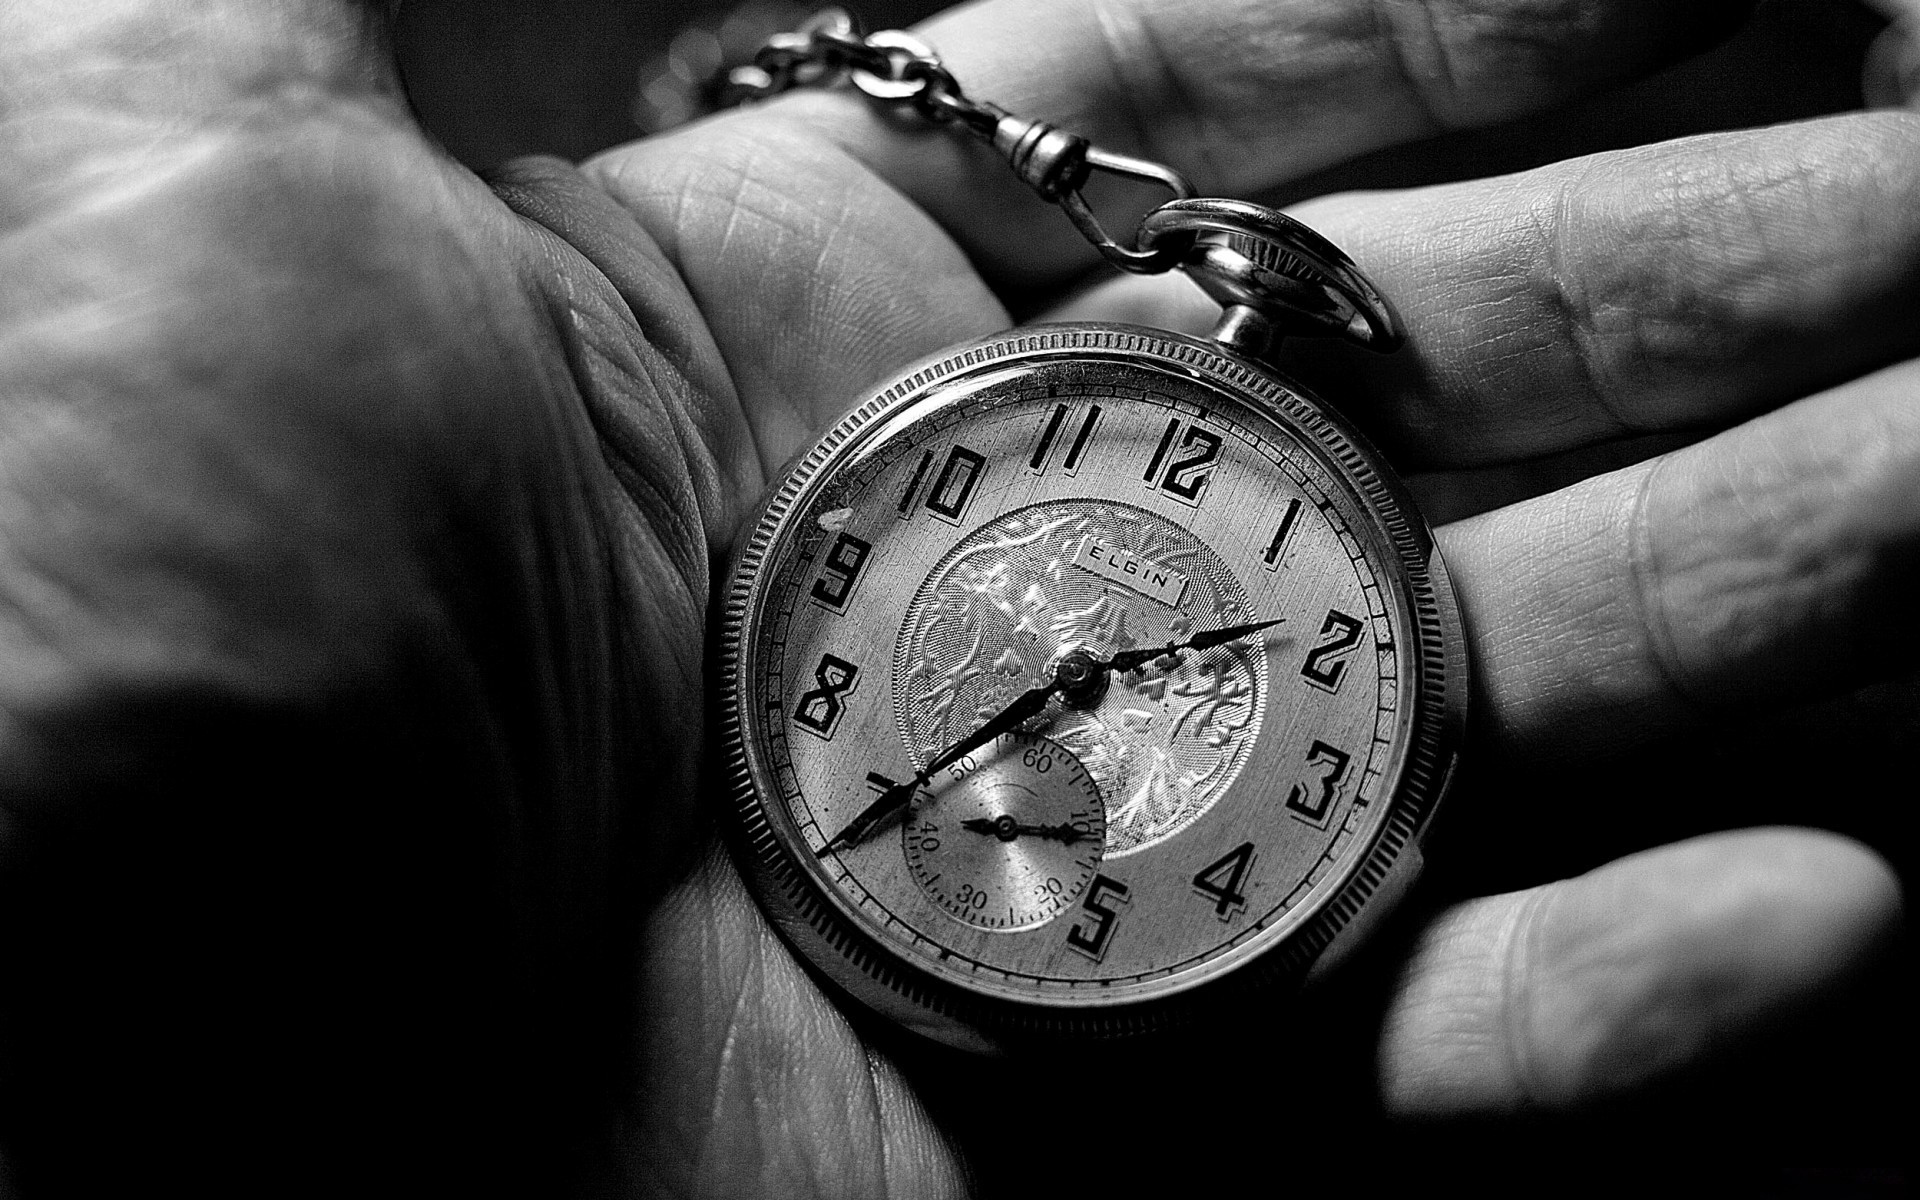 Wallpaper Hd Old Watch Wallpaper Old Watch Watch On - Pocket Watch In Hand - HD Wallpaper 